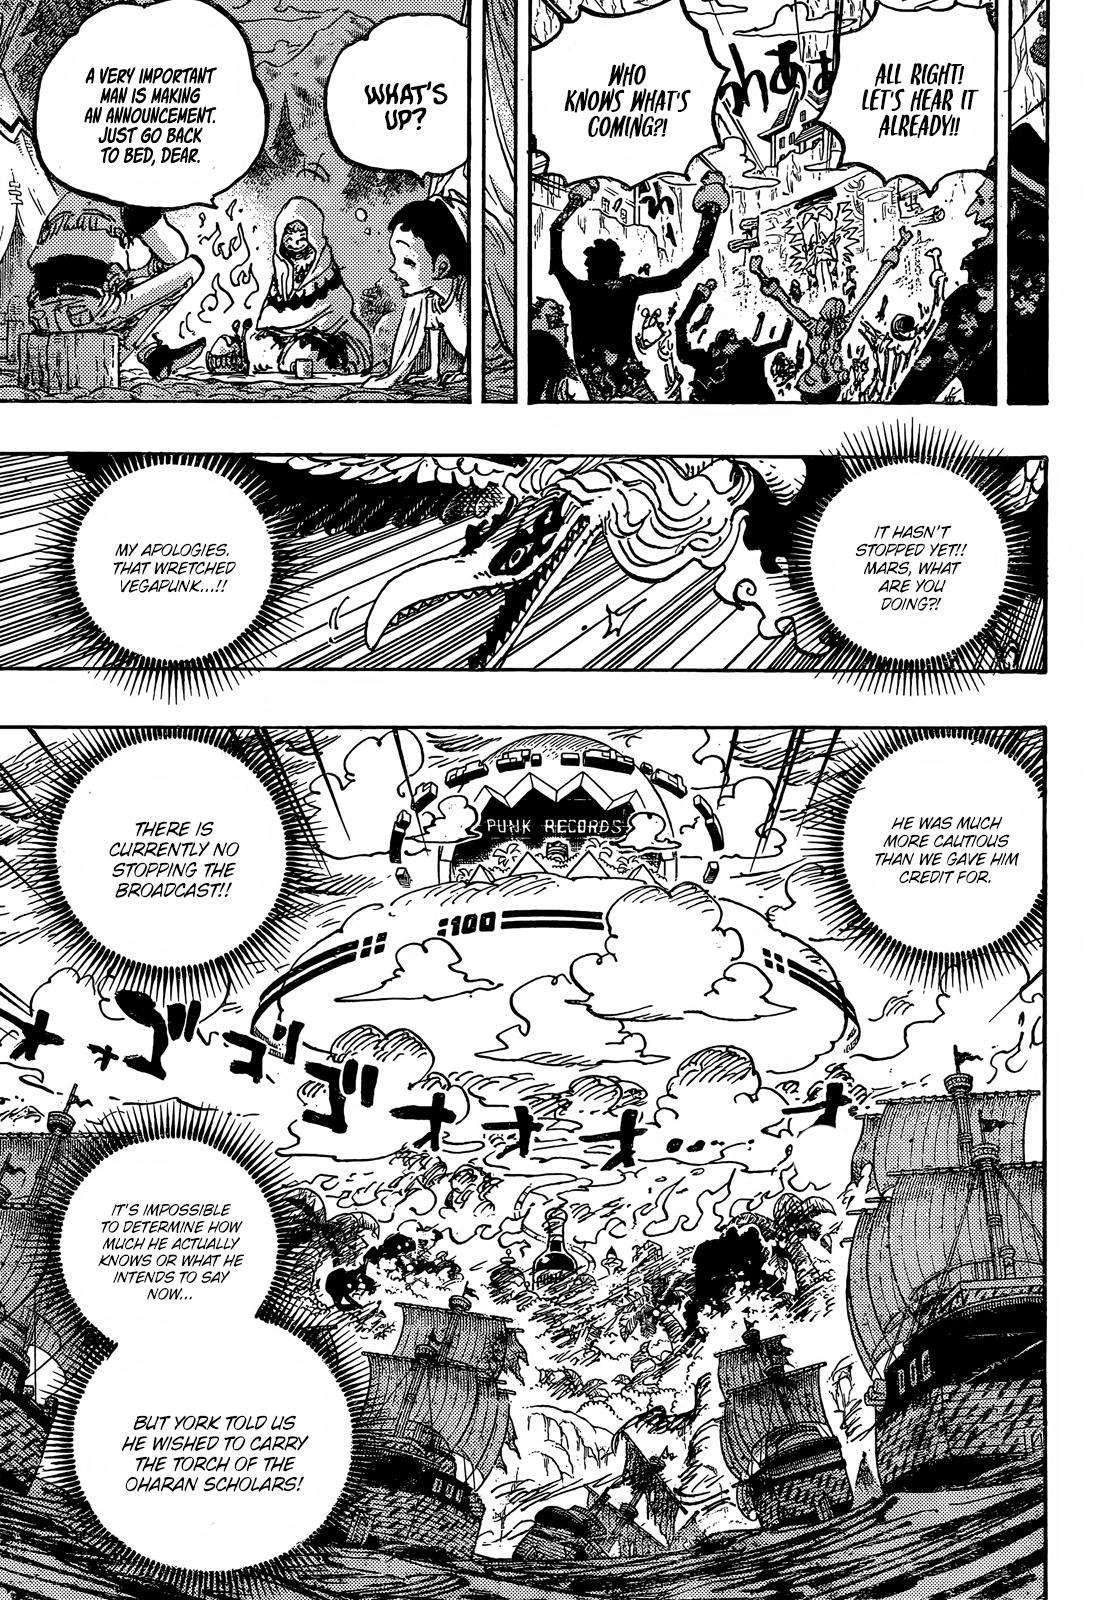 read One Piece  Manga Online Free at Mangabuddy, MangaNato,Manhwatop | MangaSo.com